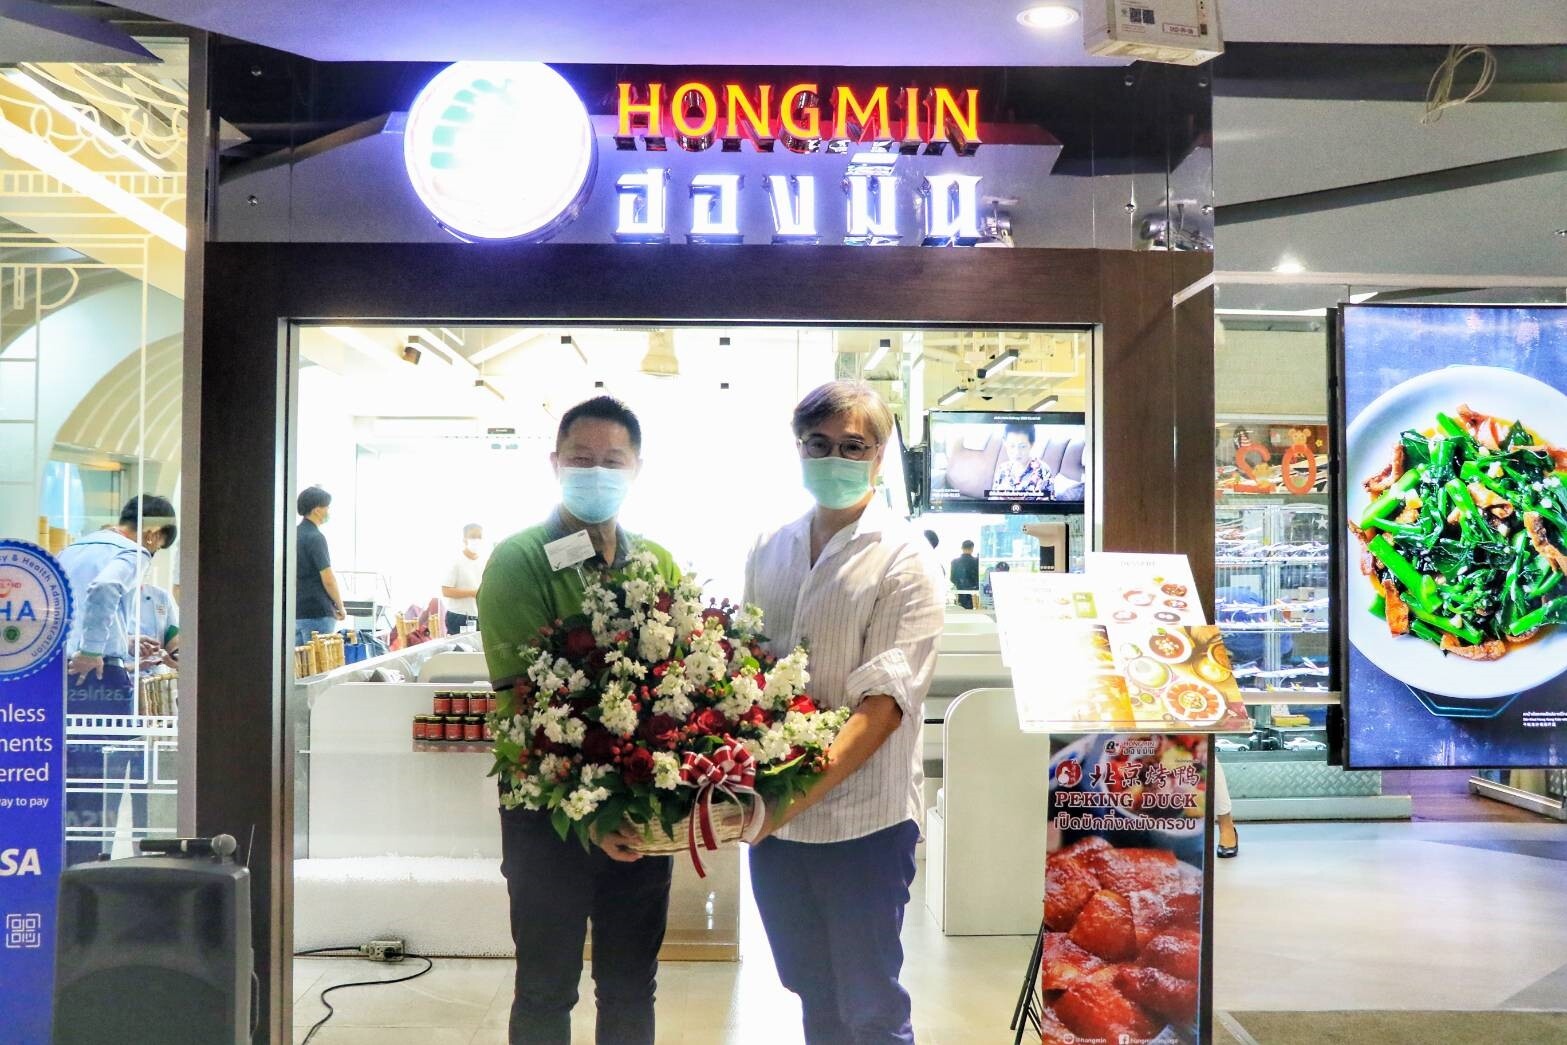 เอ็ม บี เค เซ็นเตอร์ แสดงความยินดีเปิดร้าน "ฮองมิน" เผยโฉม New Concept Store ชั้น 2 โซน A